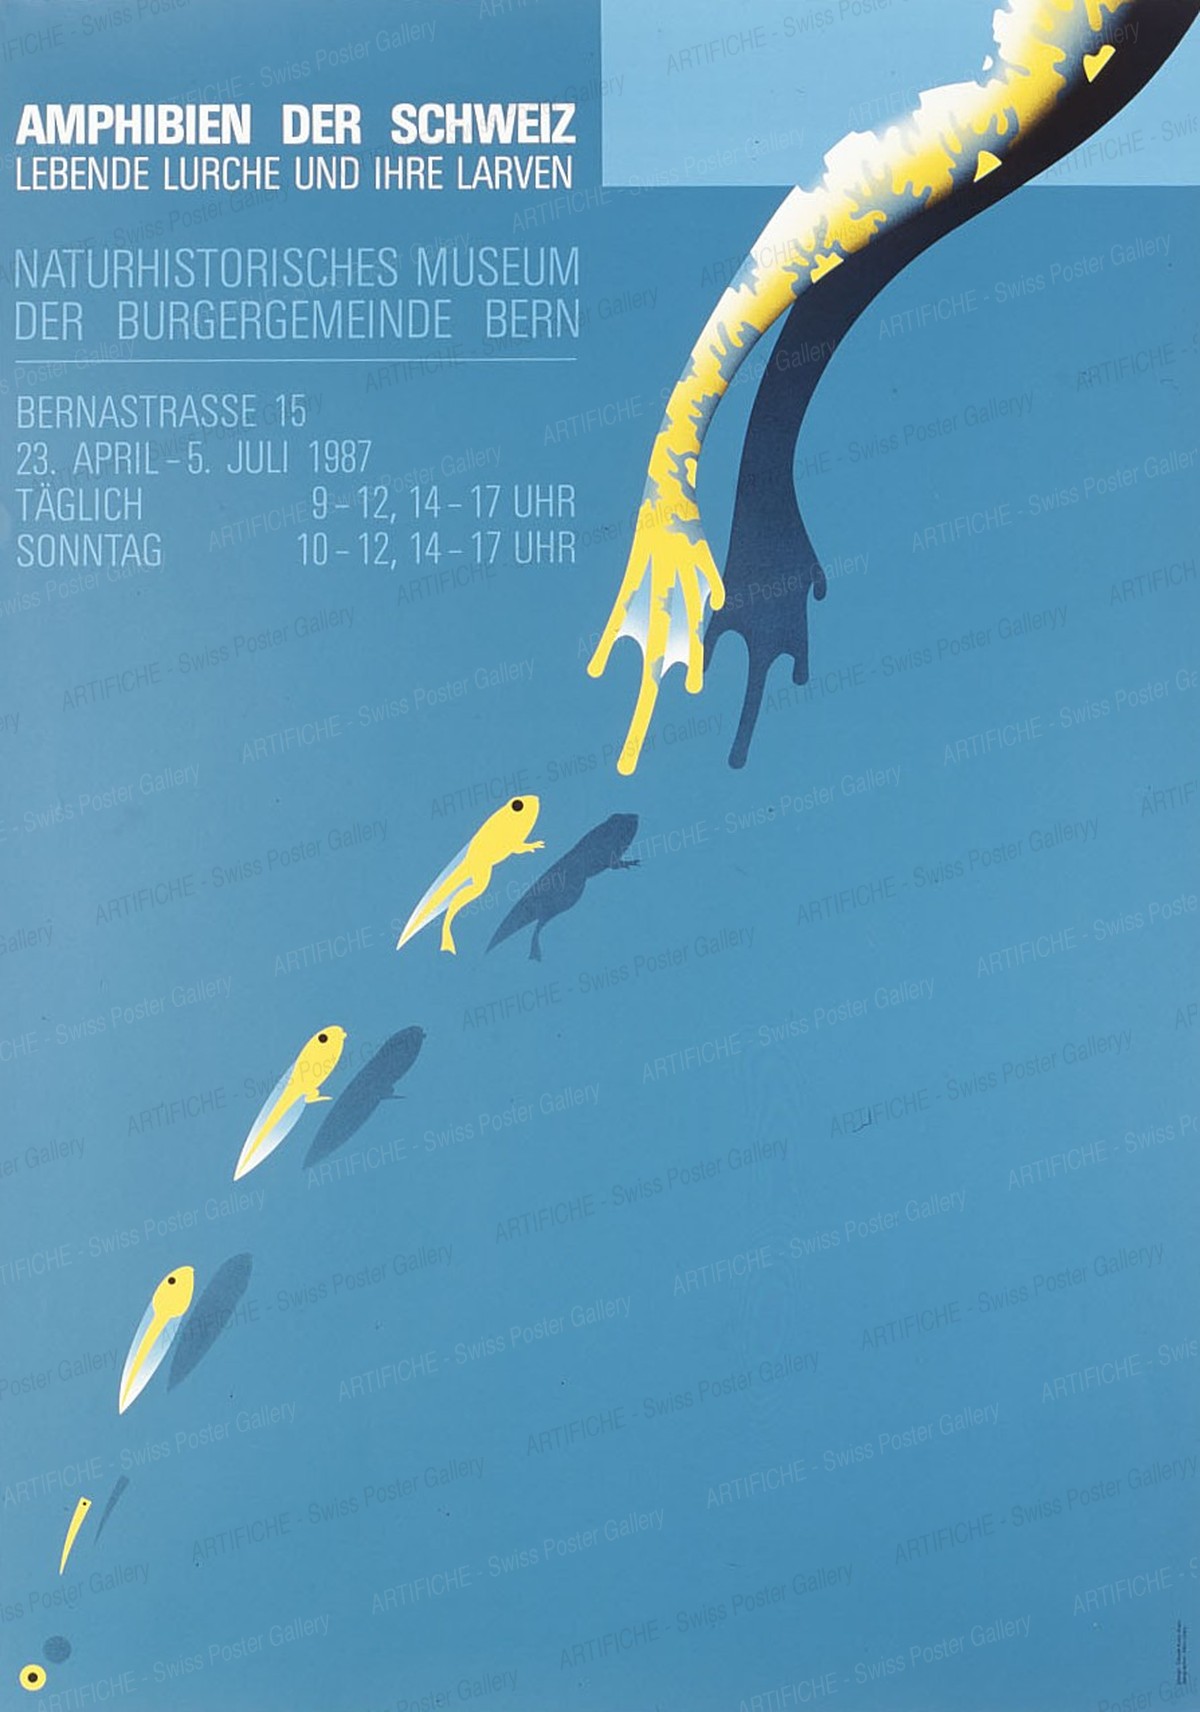 AMPHIBIEN DER SCHWEIZ – LEBENDE LURCHE UND IHRE LARVEN – Naturhistorisches Museum der Burgergemeinde Bern, Claude Kuhn